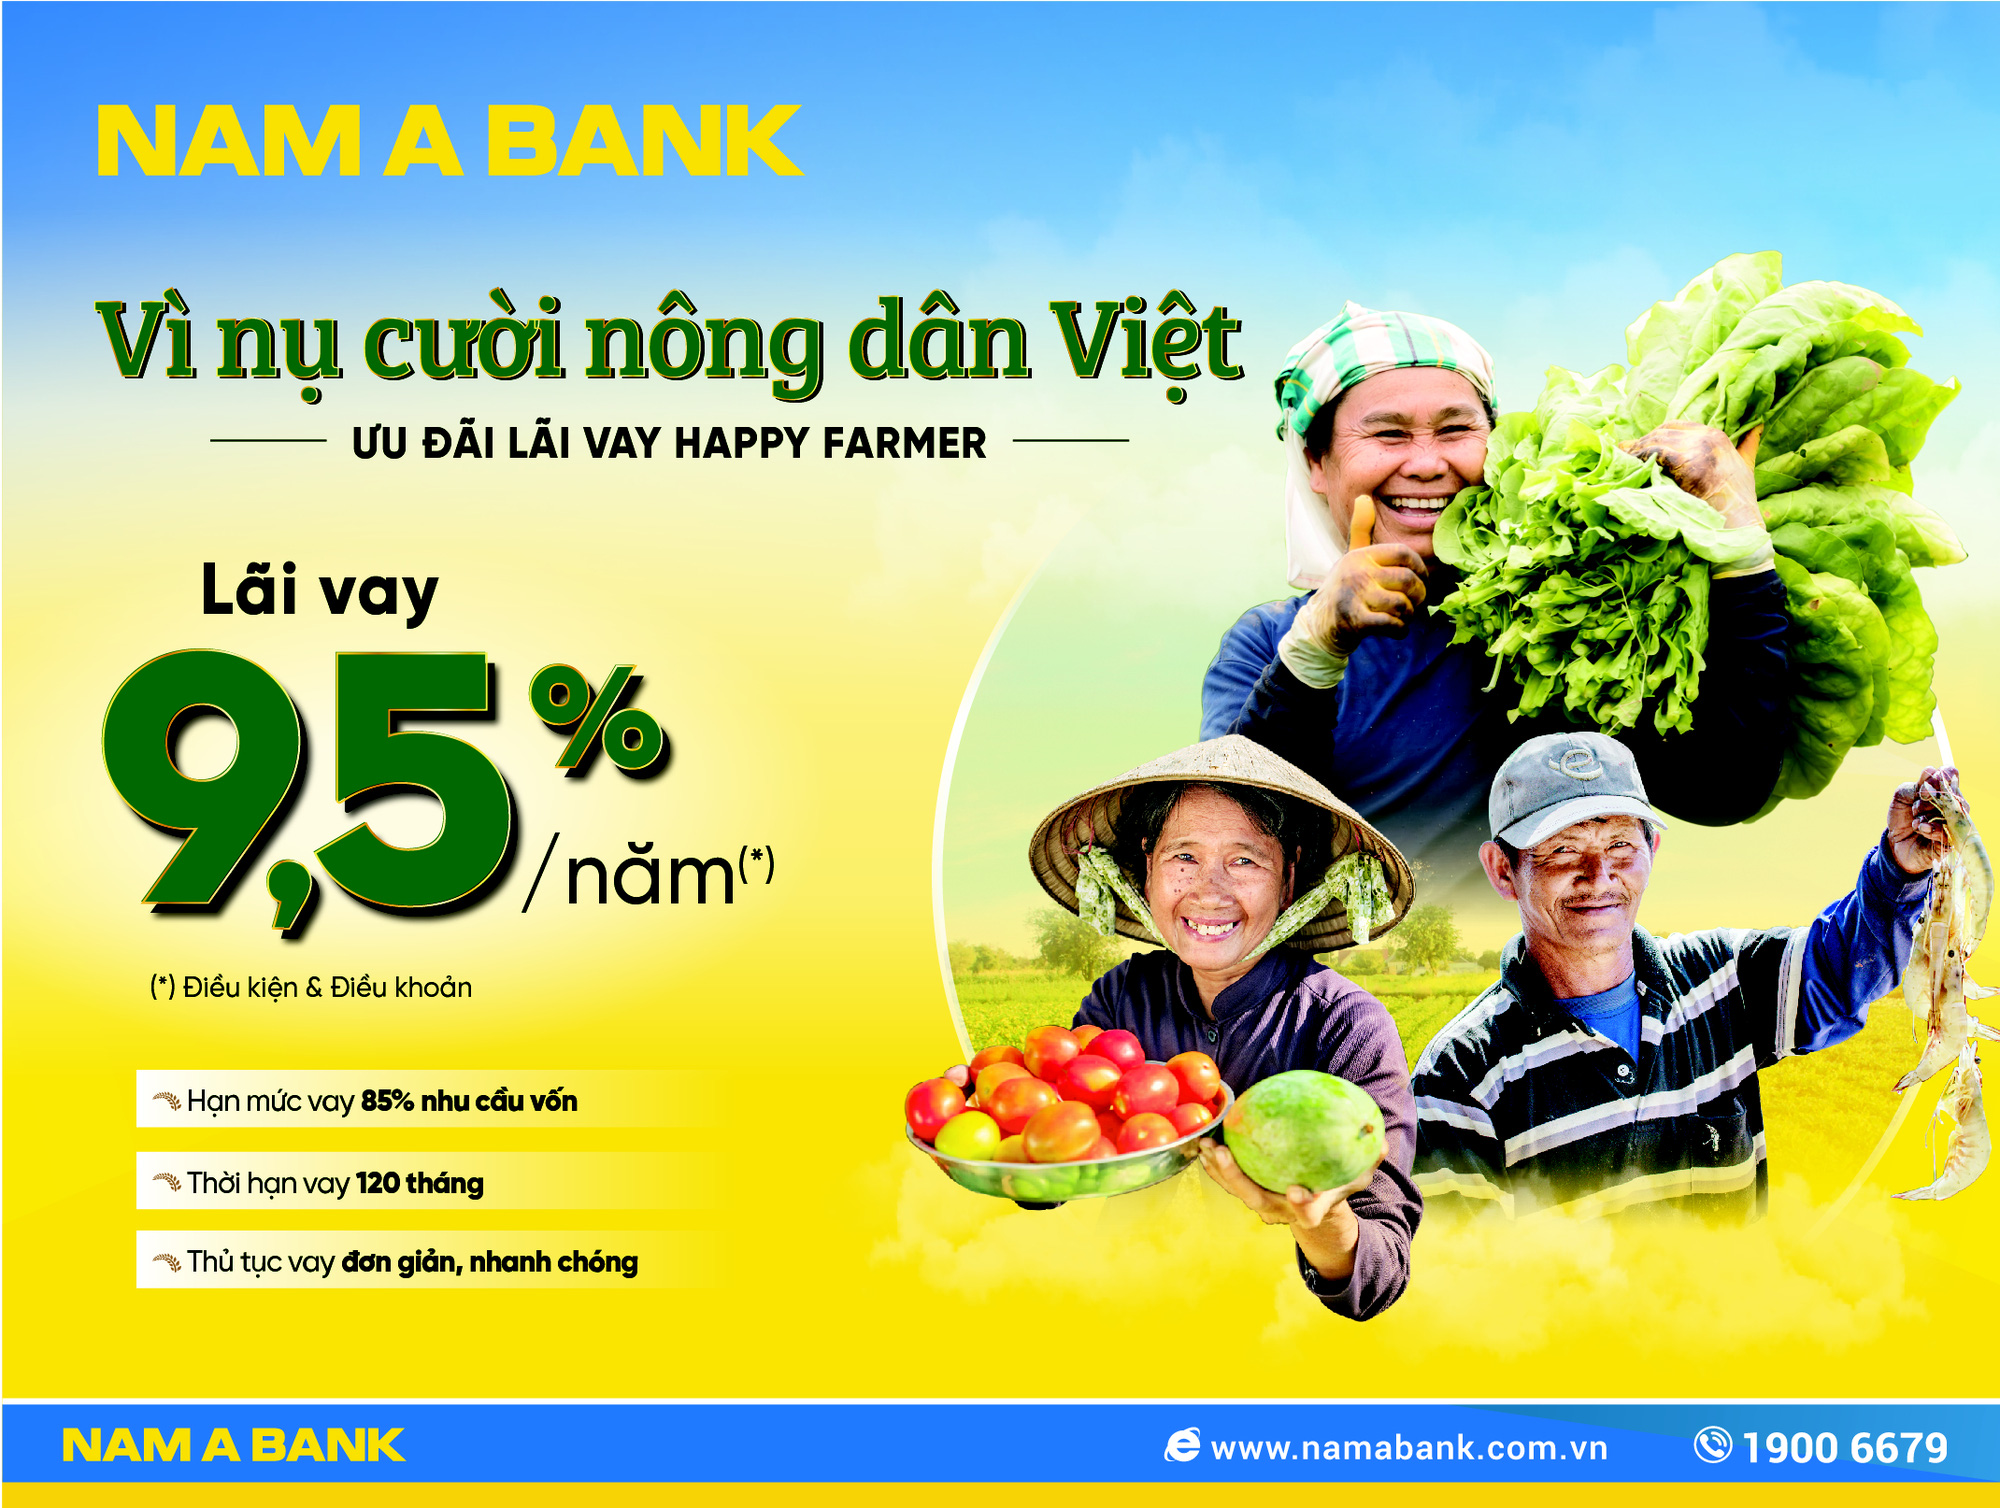 Nam A Bank dành nhiều ưu đãi cho vay nông nghiệp nông thôn - Ảnh 1.